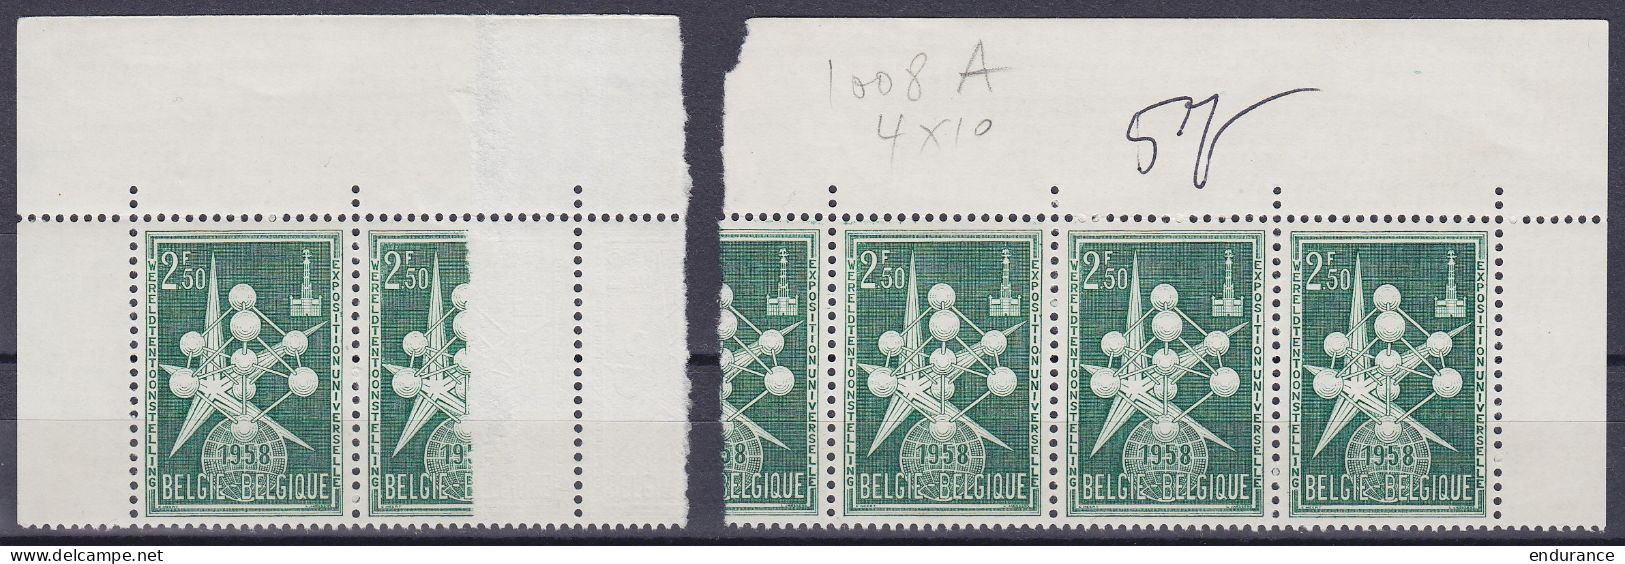 Bande Sur Raccord De 5x N°1008A ** "Atomium" 2,50f Vert Exposition De Bruxelles 1958 (haut De Feuille) (certificat Micha - 1714-1794 (Pays-Bas Autrichiens)